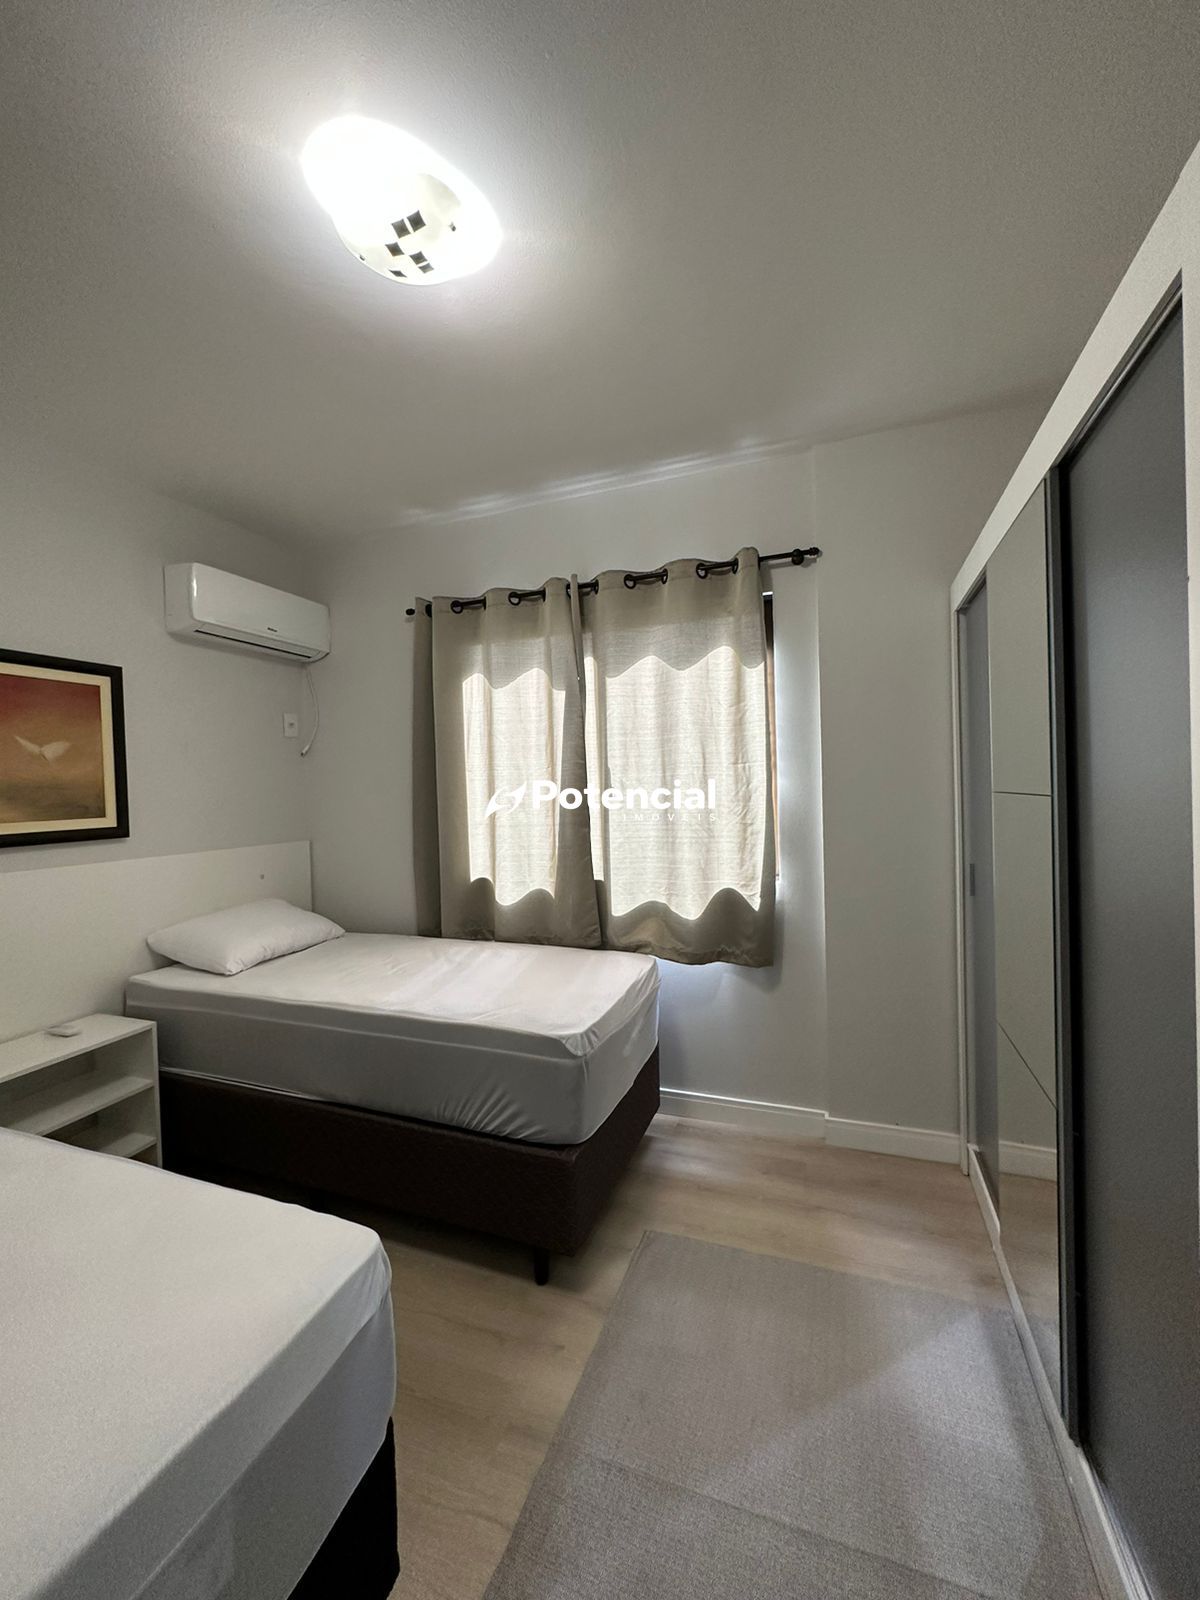 Imagem de Sueli 3 Dormitórios sendo 1 Suíte | Meia Praia - Itapema | Potencial Imóveis